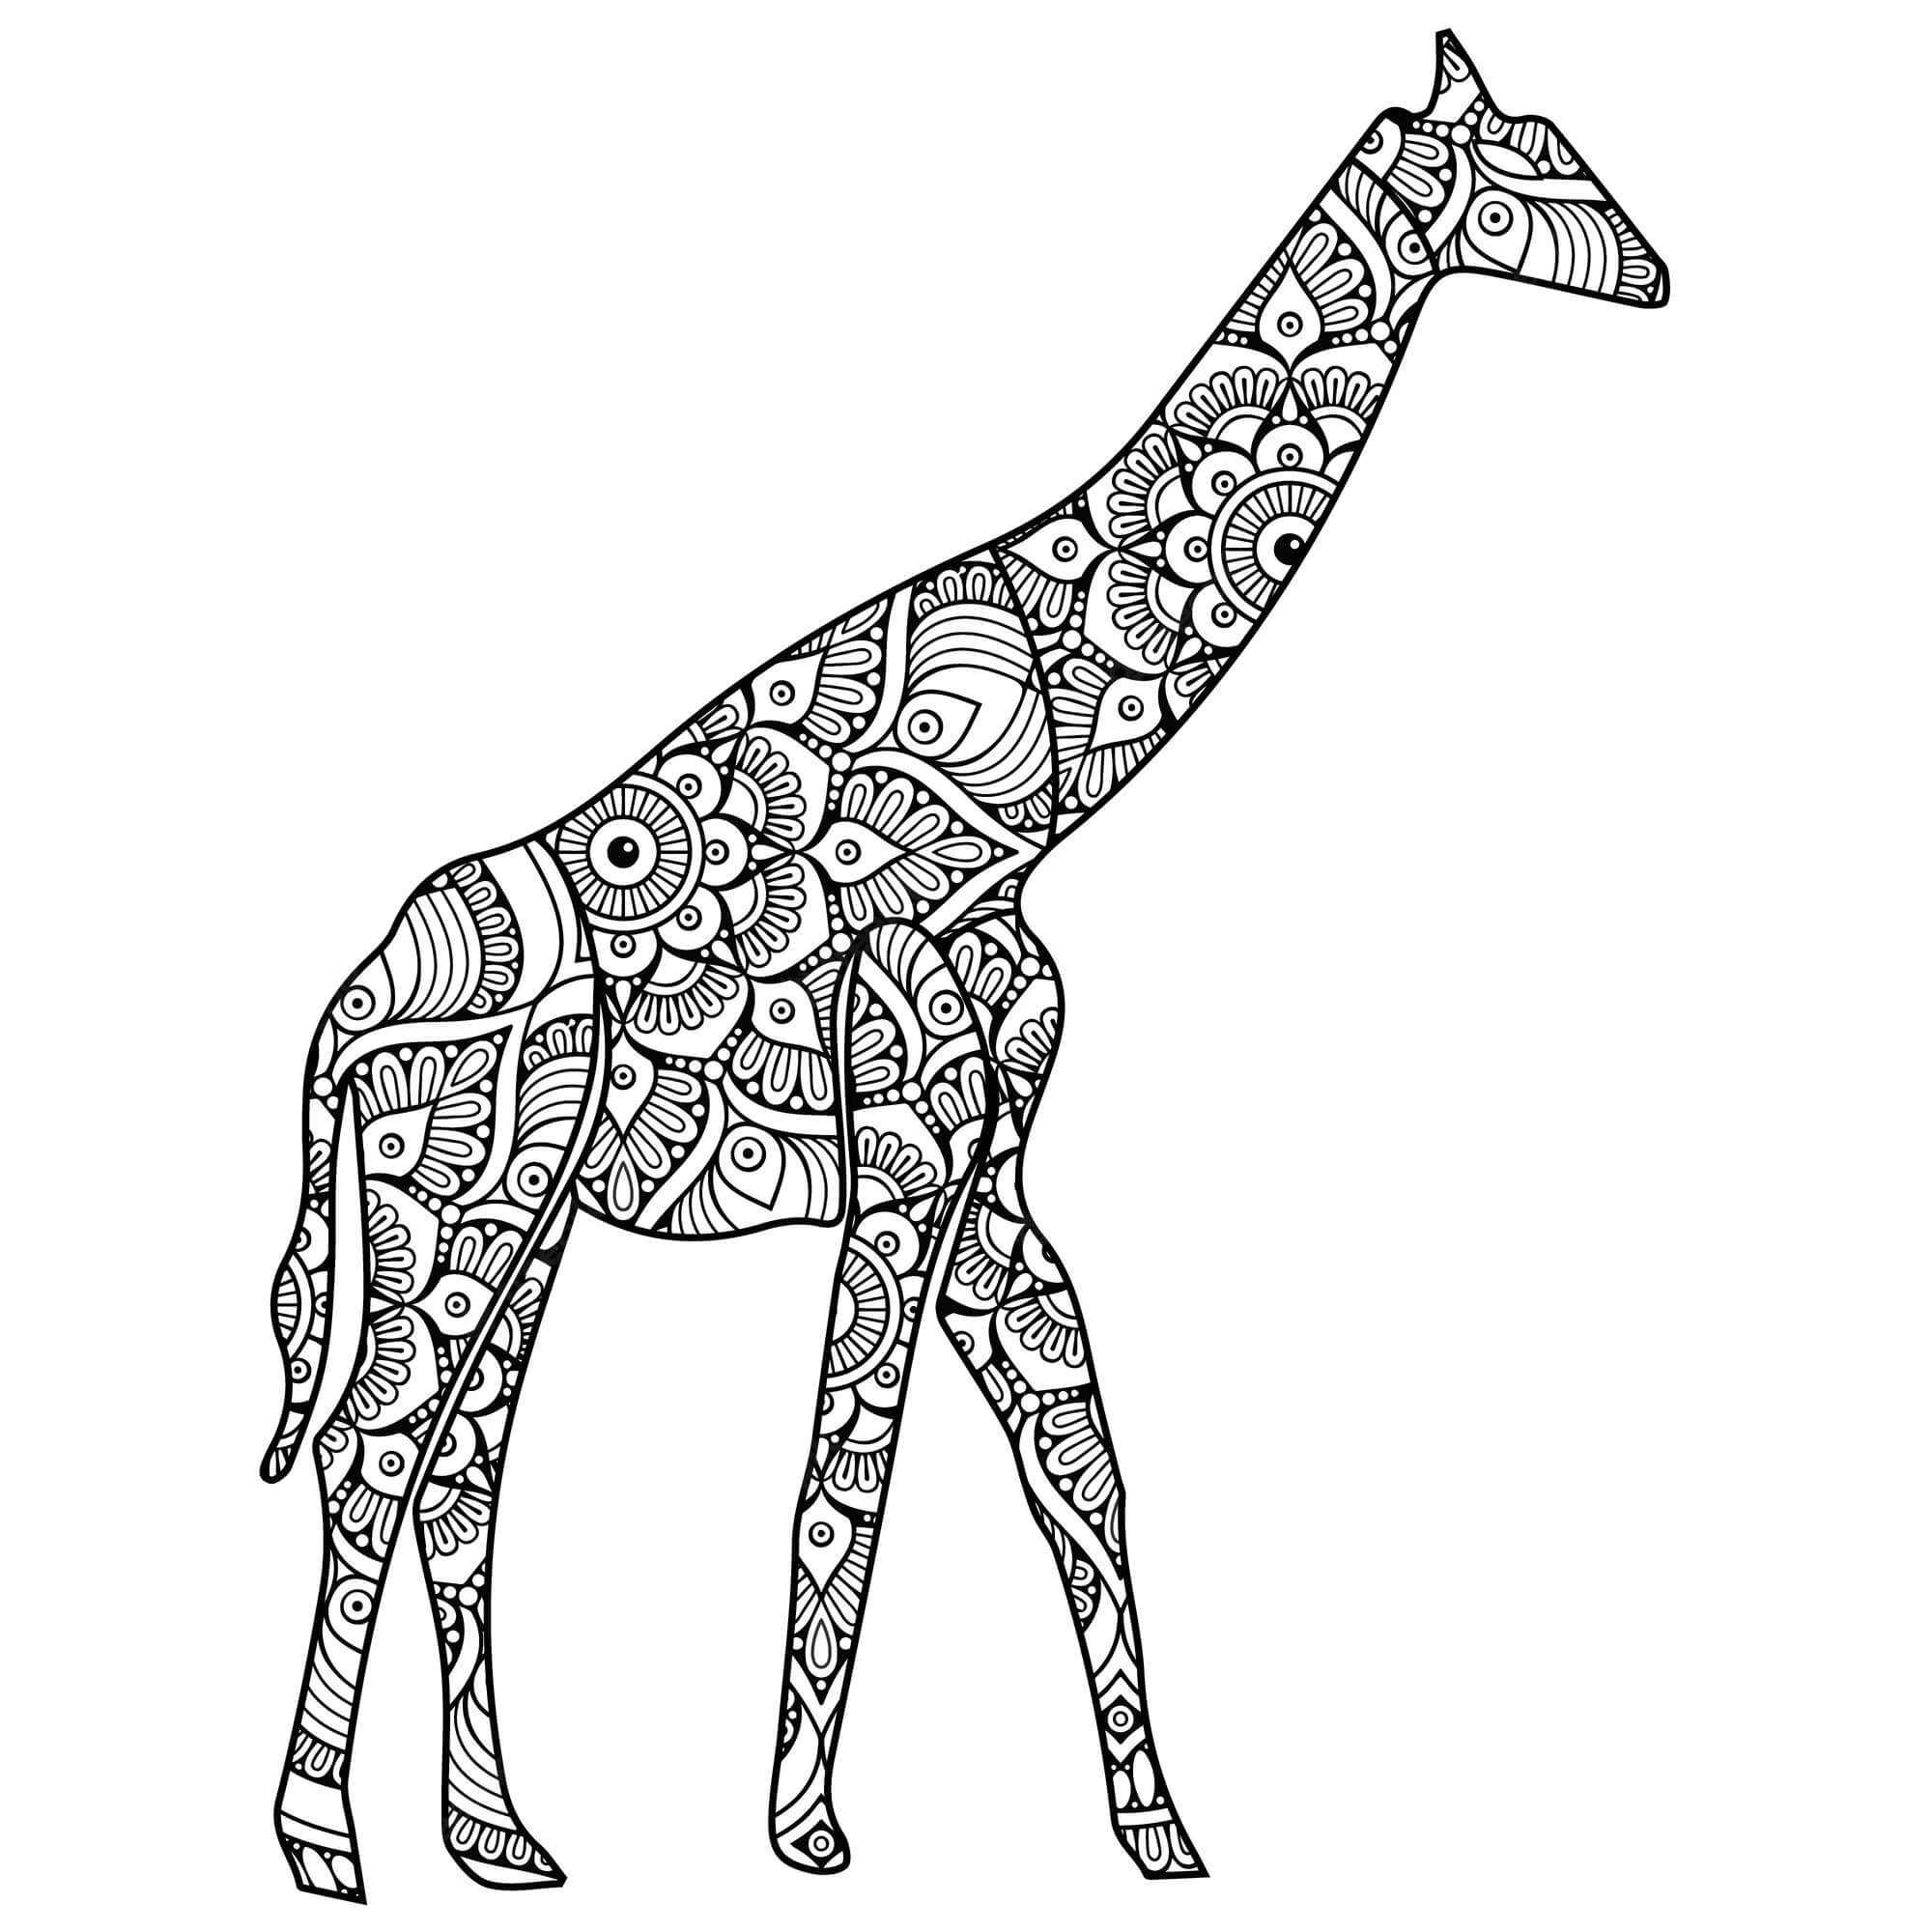 Mandala Giraffe Coloring Page - Sheet 6 Mandalas